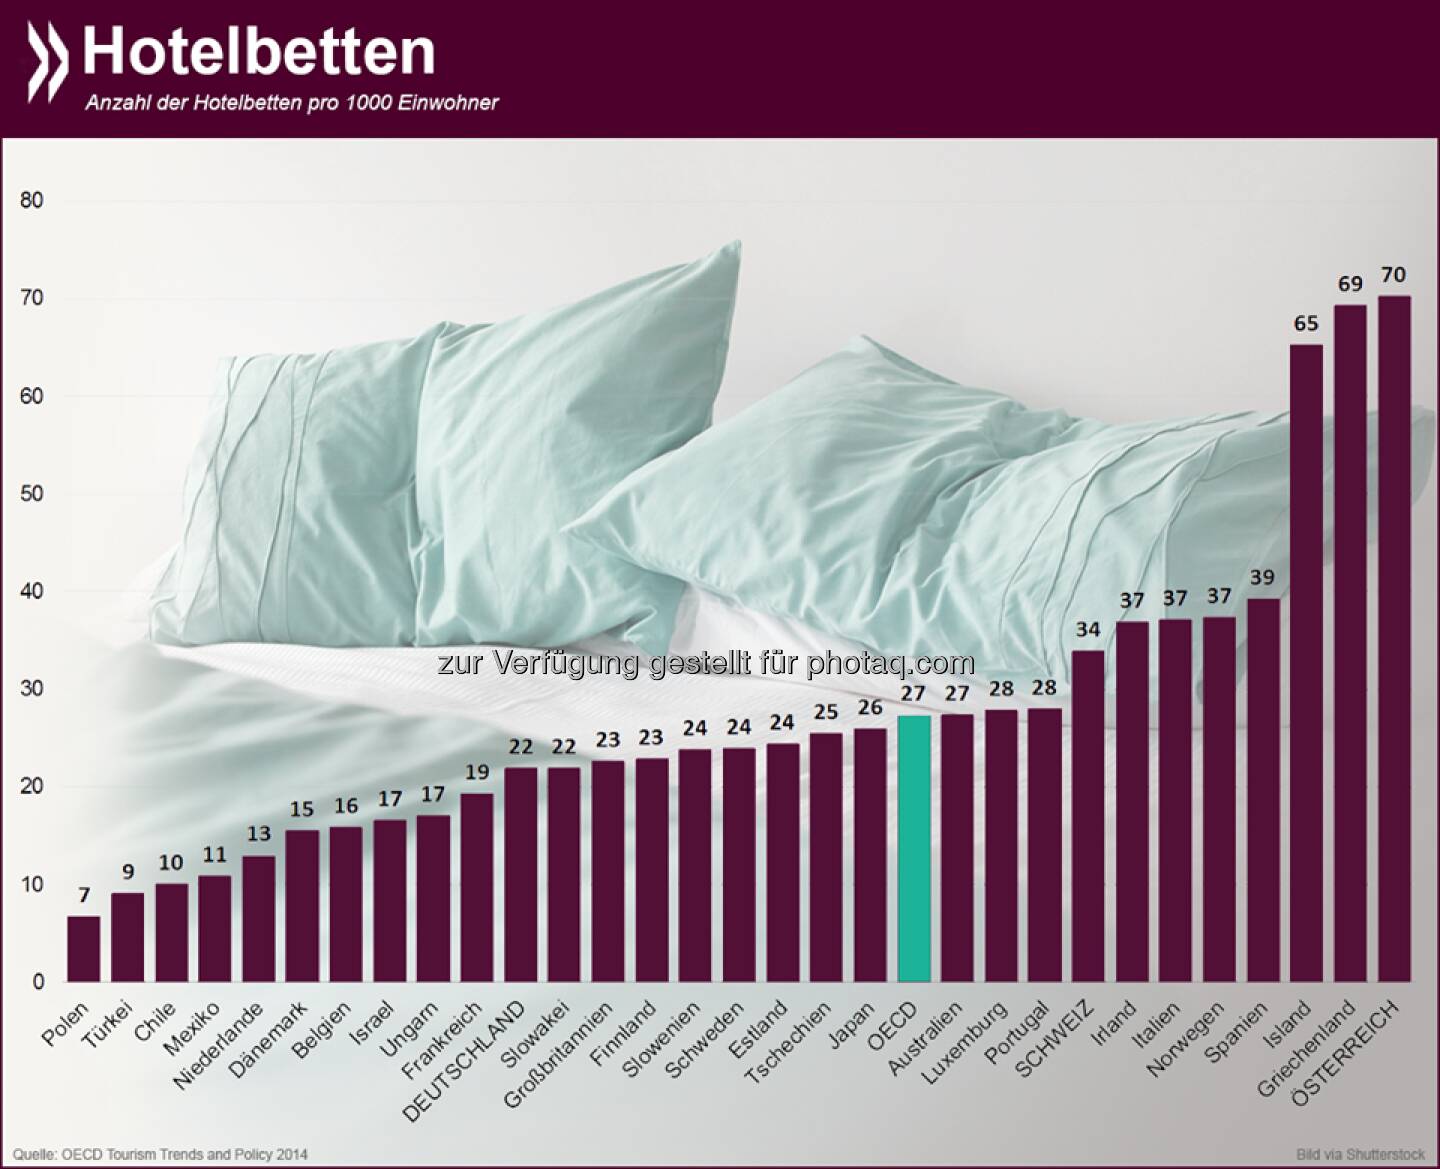 Im weißen Rössl und Co: Gemessen an seiner Einwohnerzahl hat Österreich die meisten Hotelbetten OECD-weit. Auf tausend Einwohner kommen 70 Gästebetten. Das Schlusslicht bildet Polen mit knapp sieben.

Mehr Infos zum Thema unter: http://bit.ly/1pZHntI (S.22)  Source: http://twitter.com/oecdstatistik